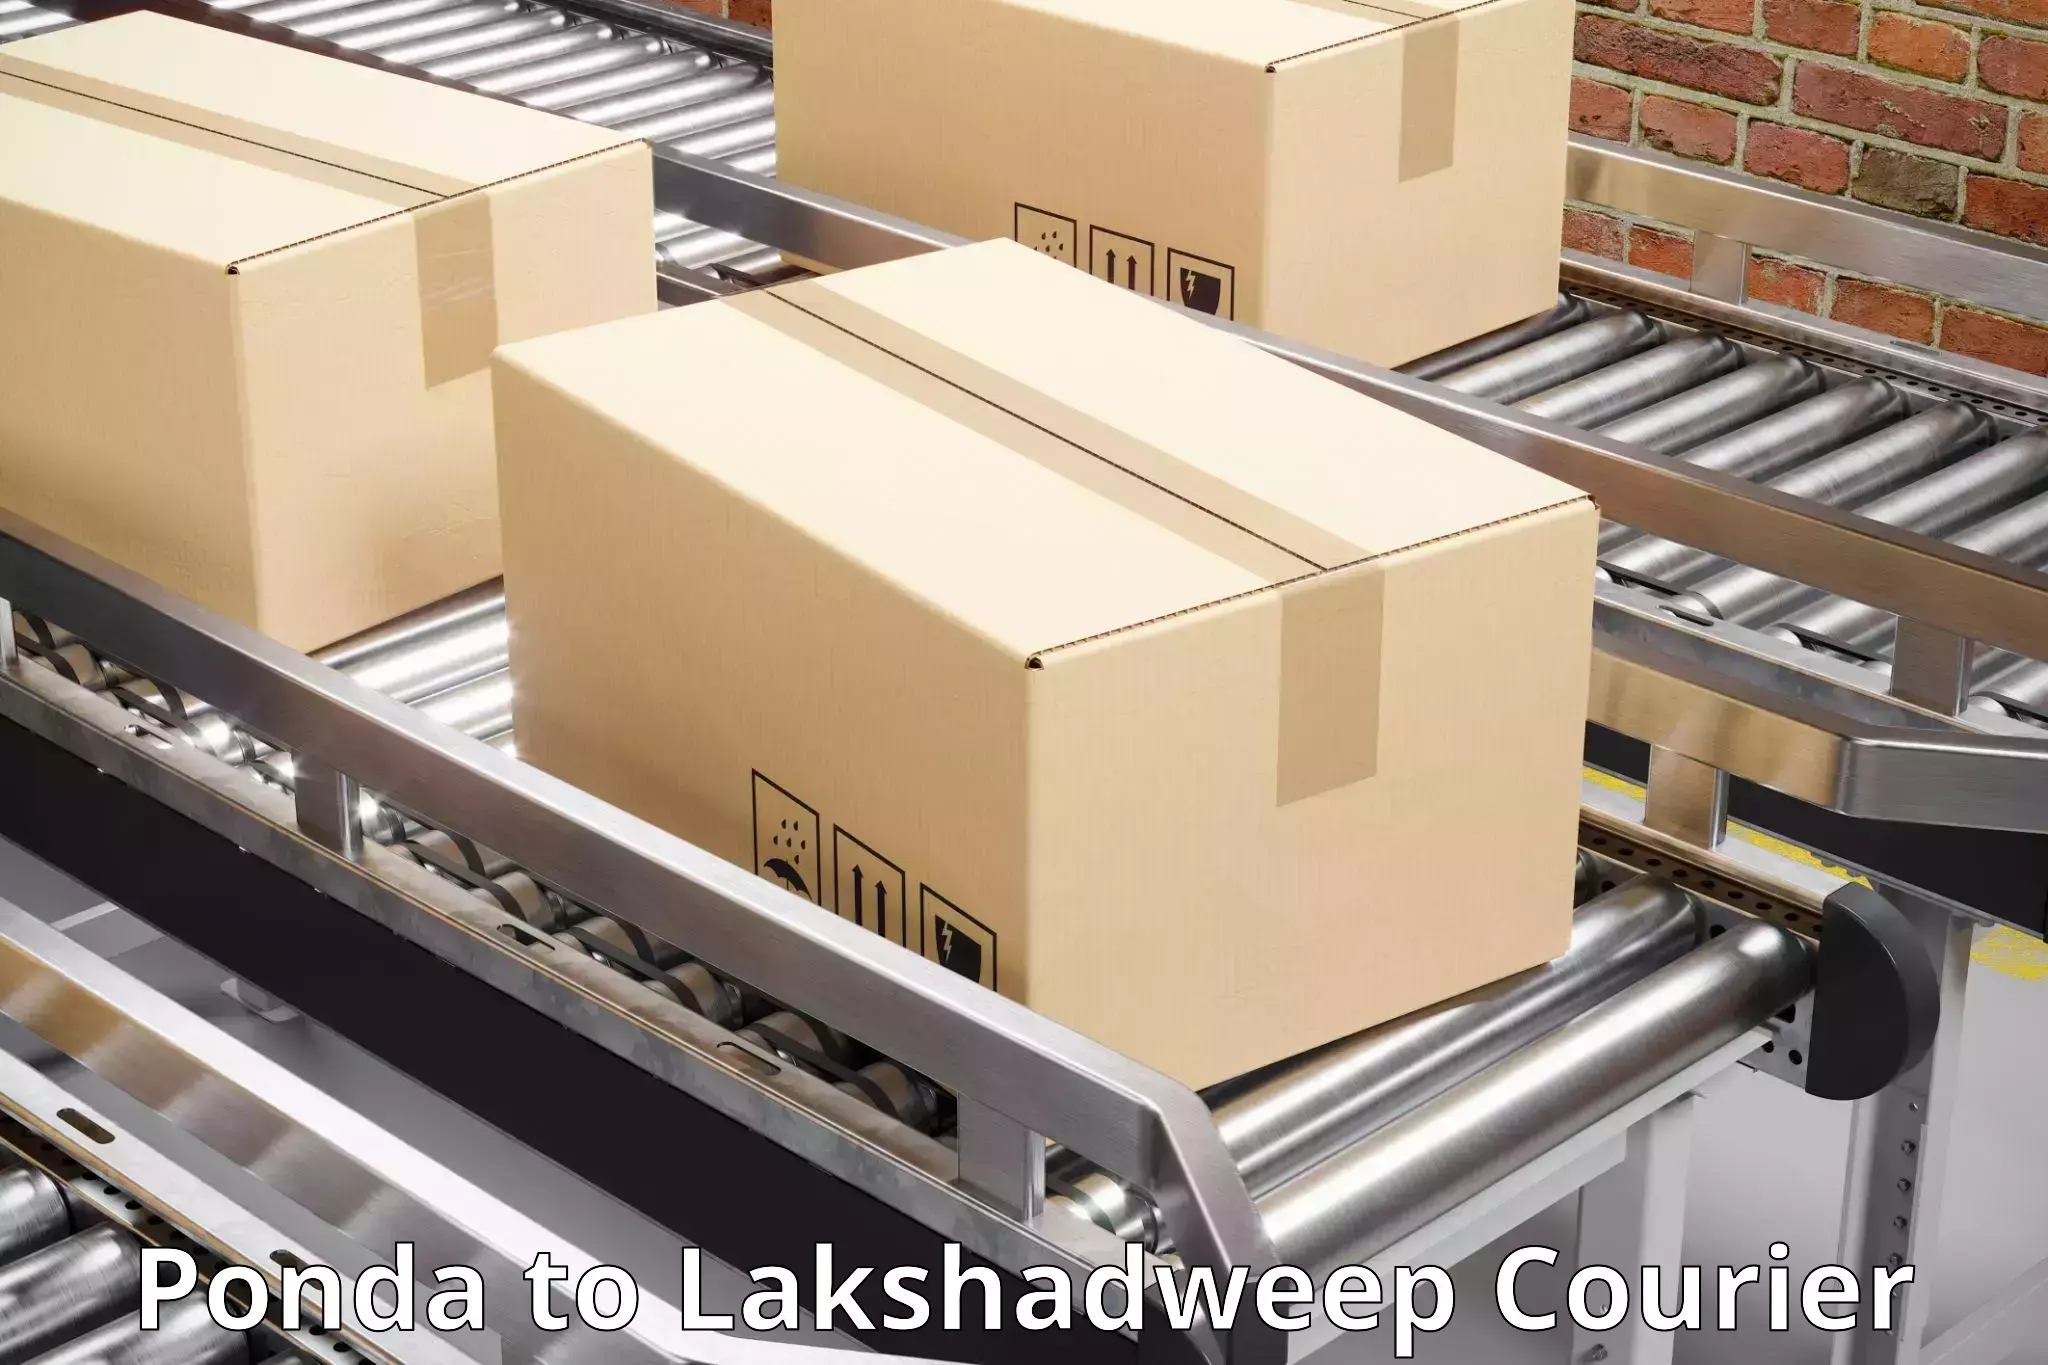 Global parcel delivery Ponda to Lakshadweep